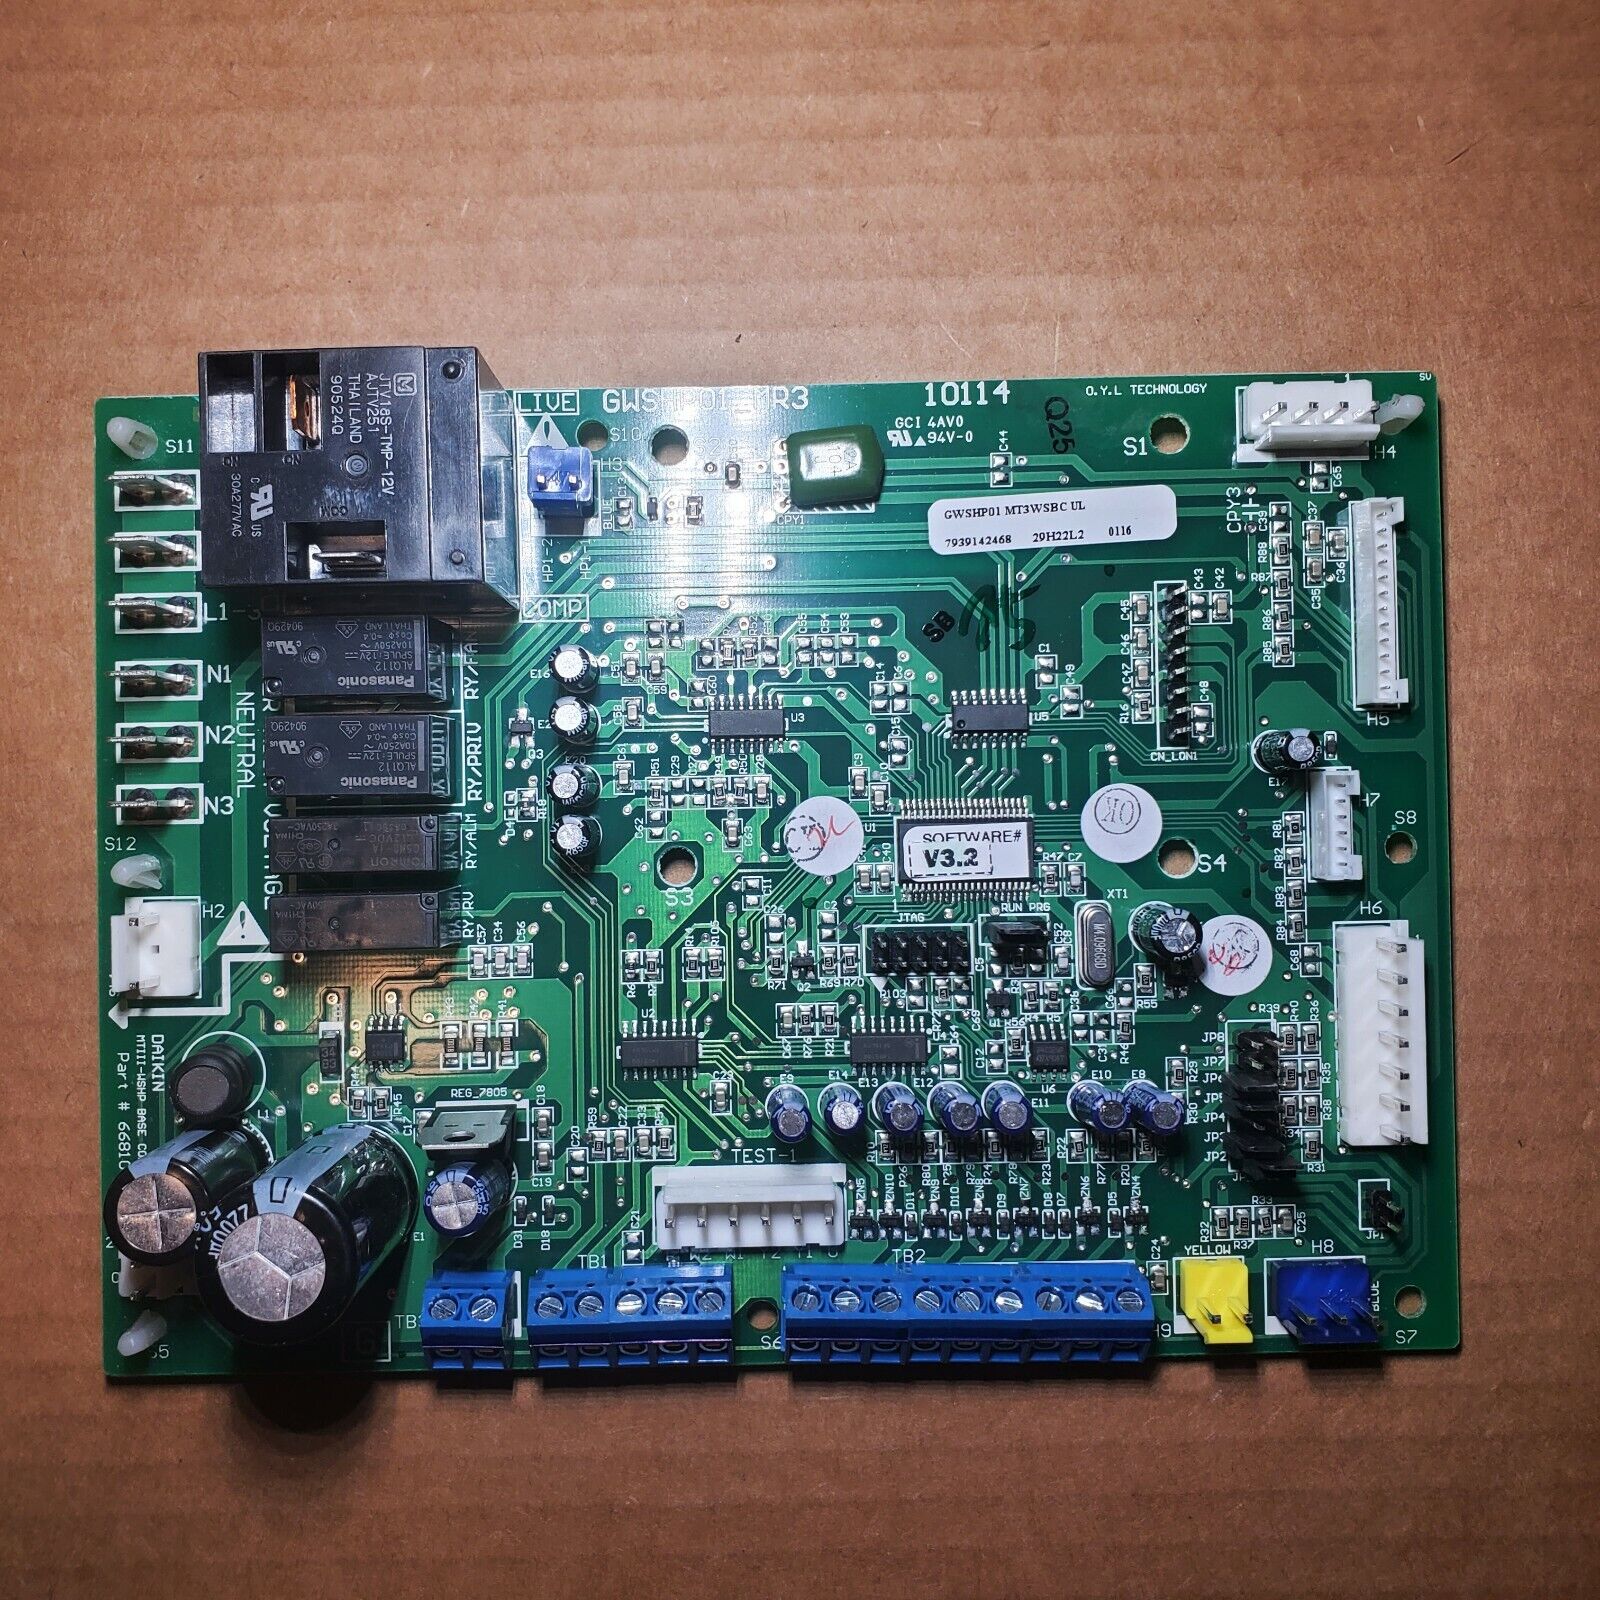 Dakin/McQuay 668105601 MICROTECH III Base Controller Circuit Board GWSHP01_MR3